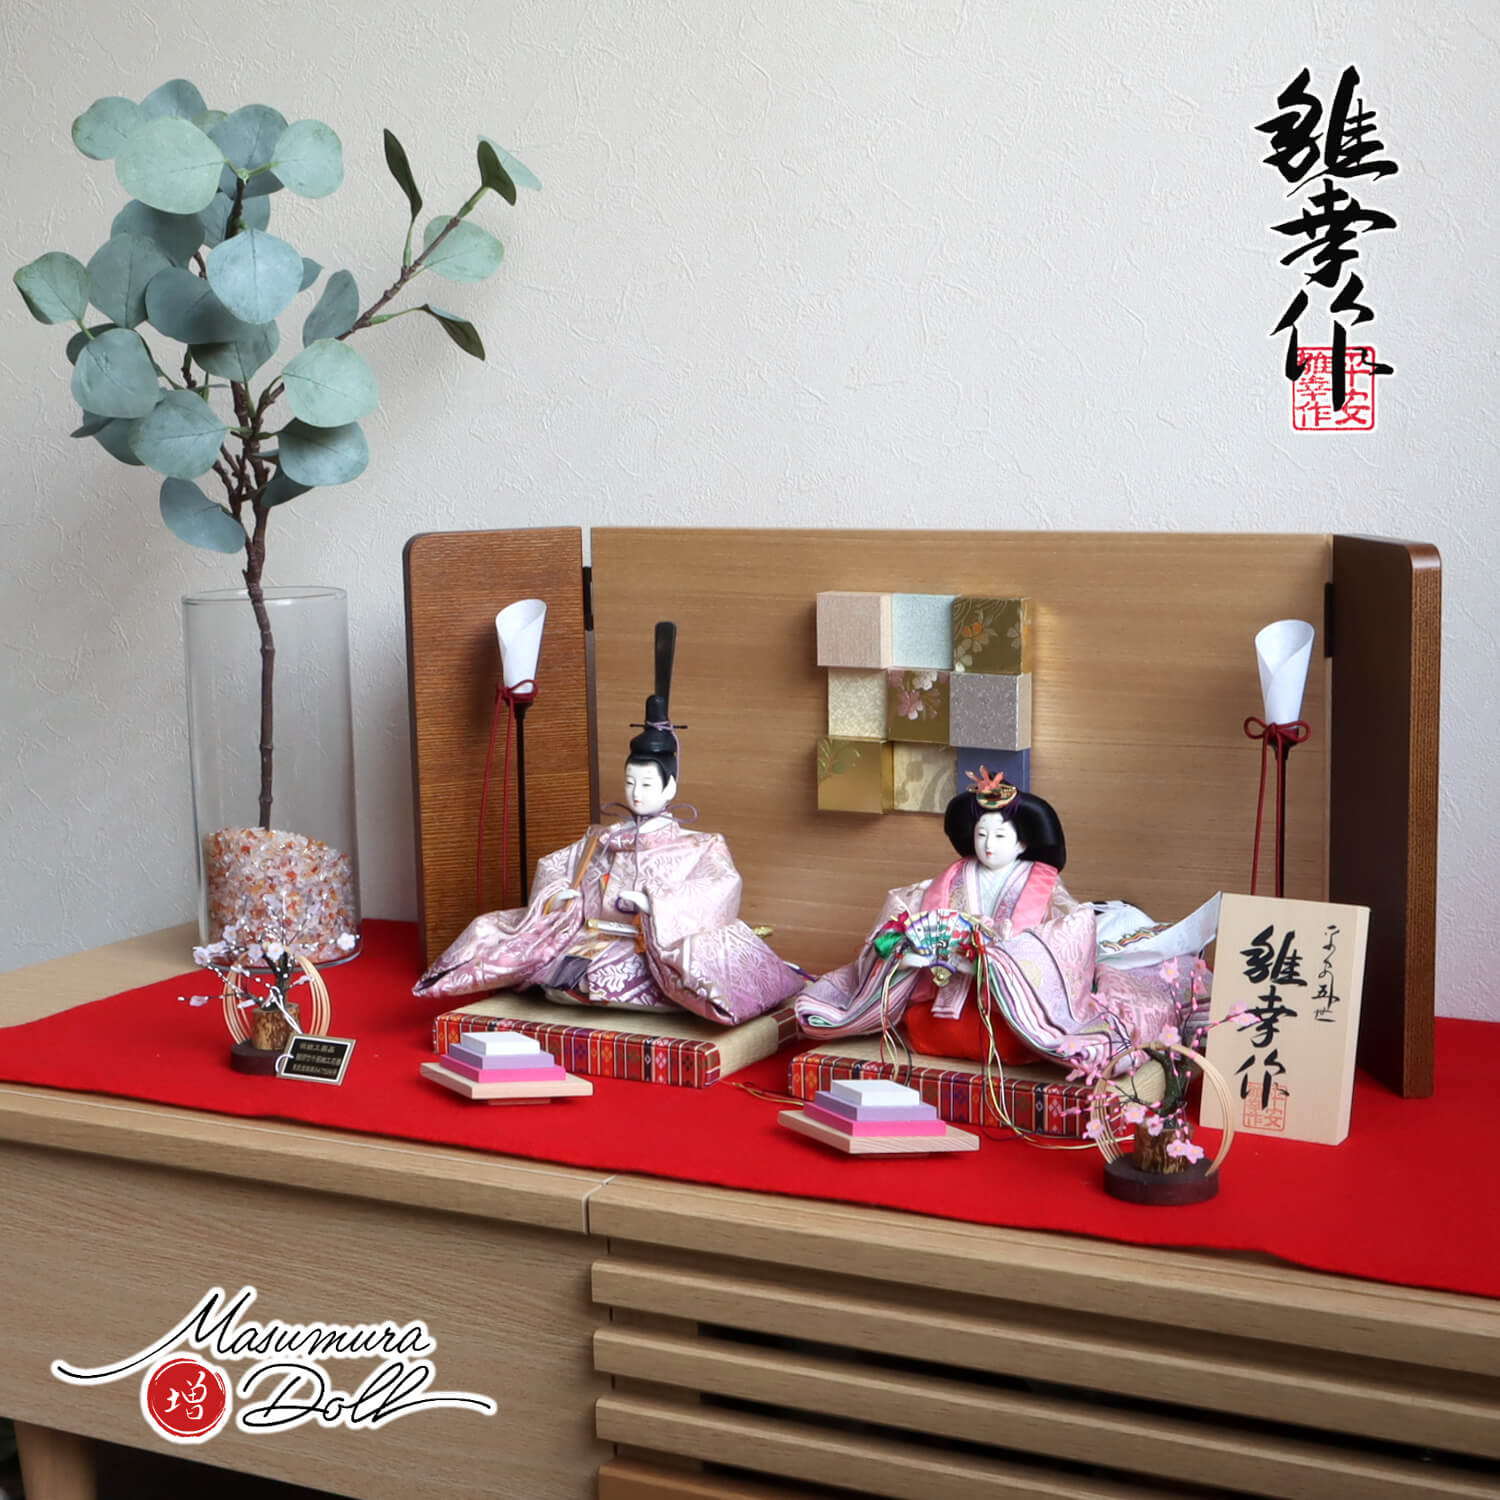 【新品爆買い】IK‐05172 ひな人形 おひなさま 親王 京風 木製総盛上 古道具セット ひな人形